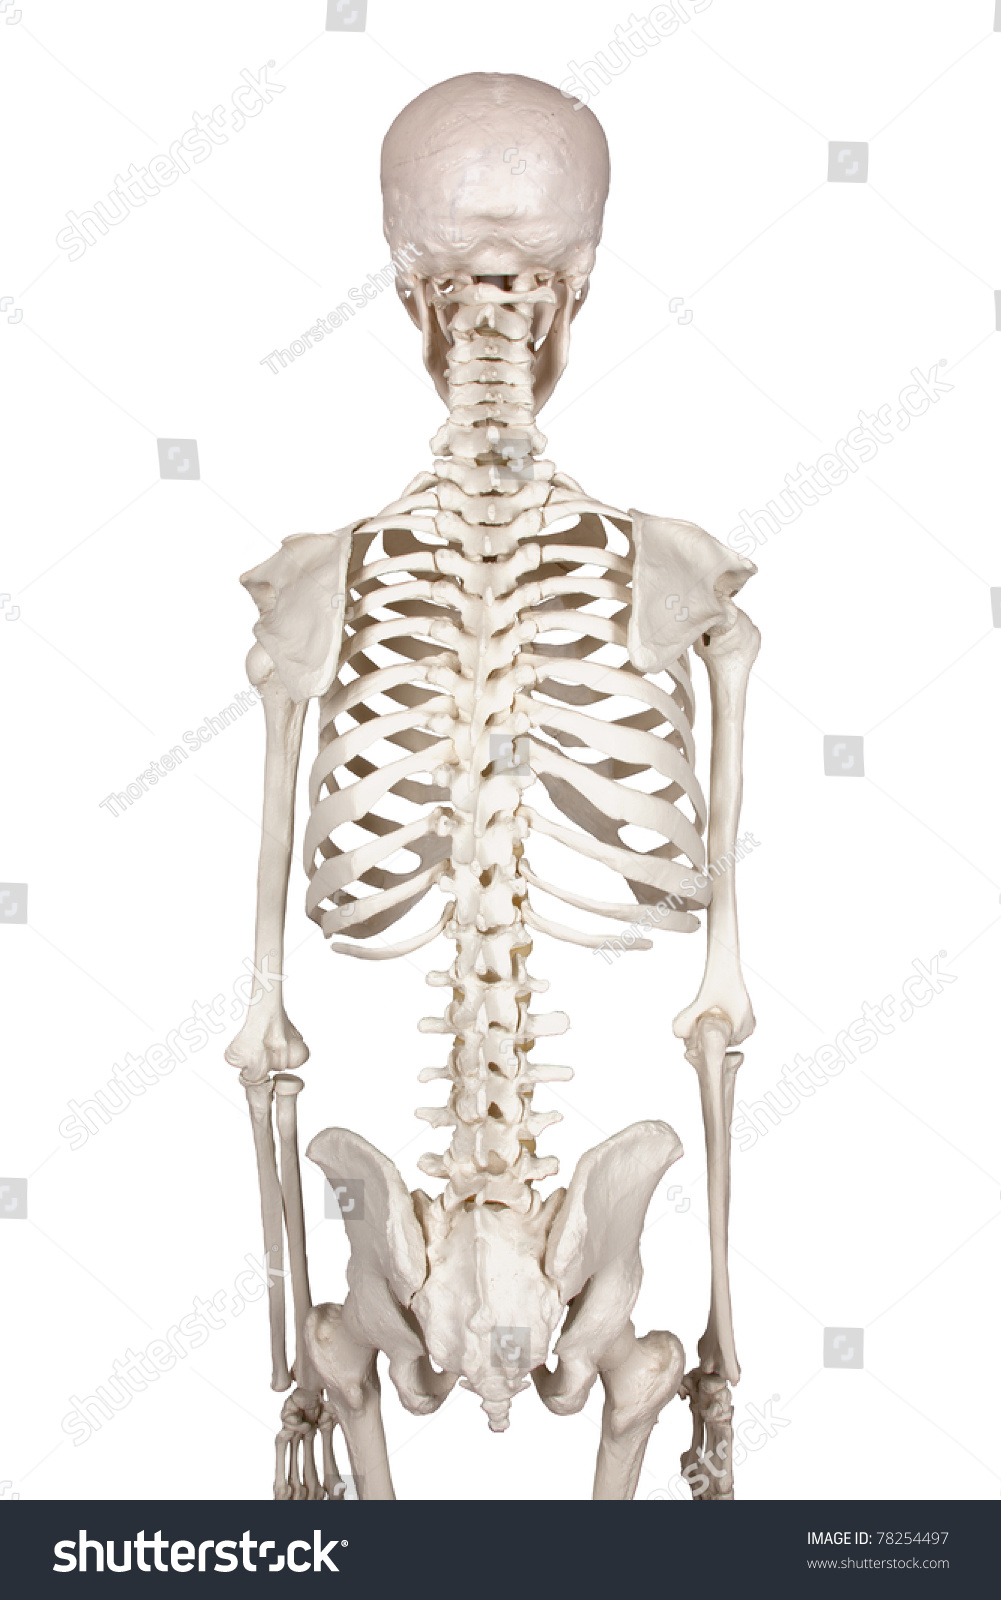 Human Anatomy Stock Photo 78254497 : Shutterstock